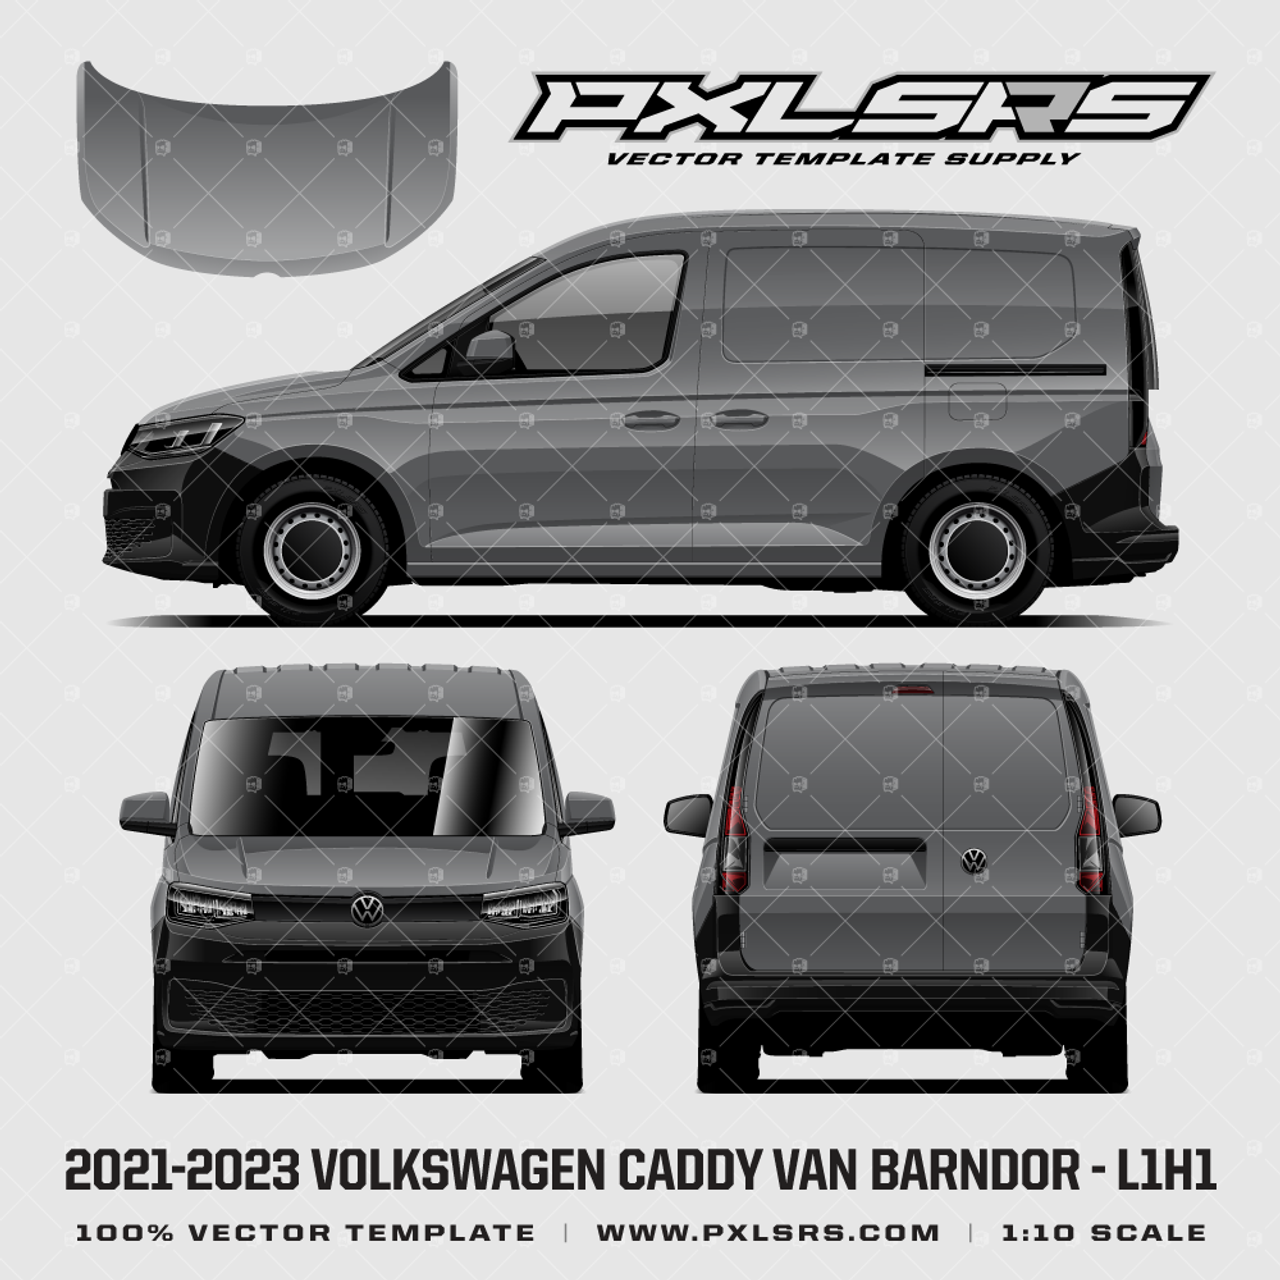 VAN WEEK 2021: VW Caddy - PHPI Online